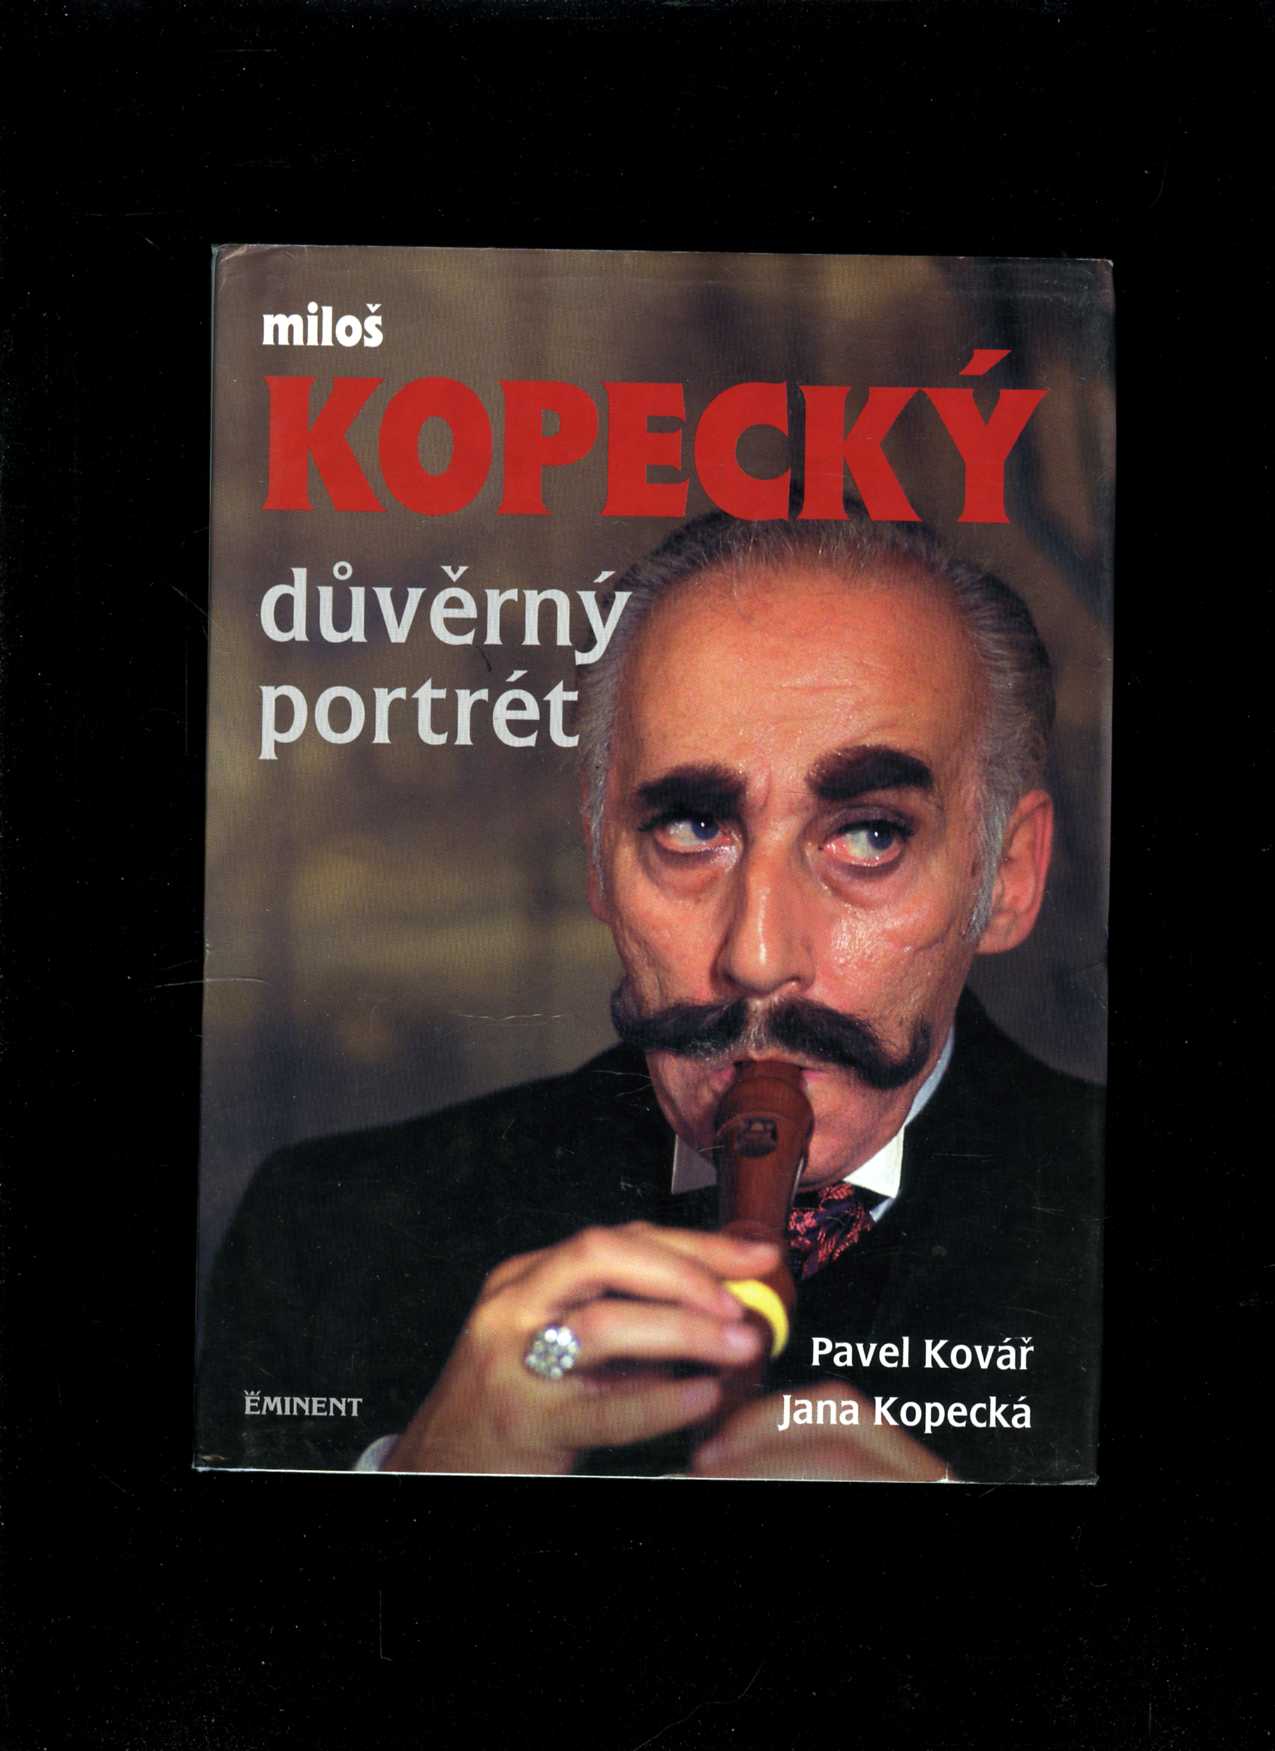 Miloš Kopecký - Důvěrný portrét (Pavel Kovář, Jana Kopecká)